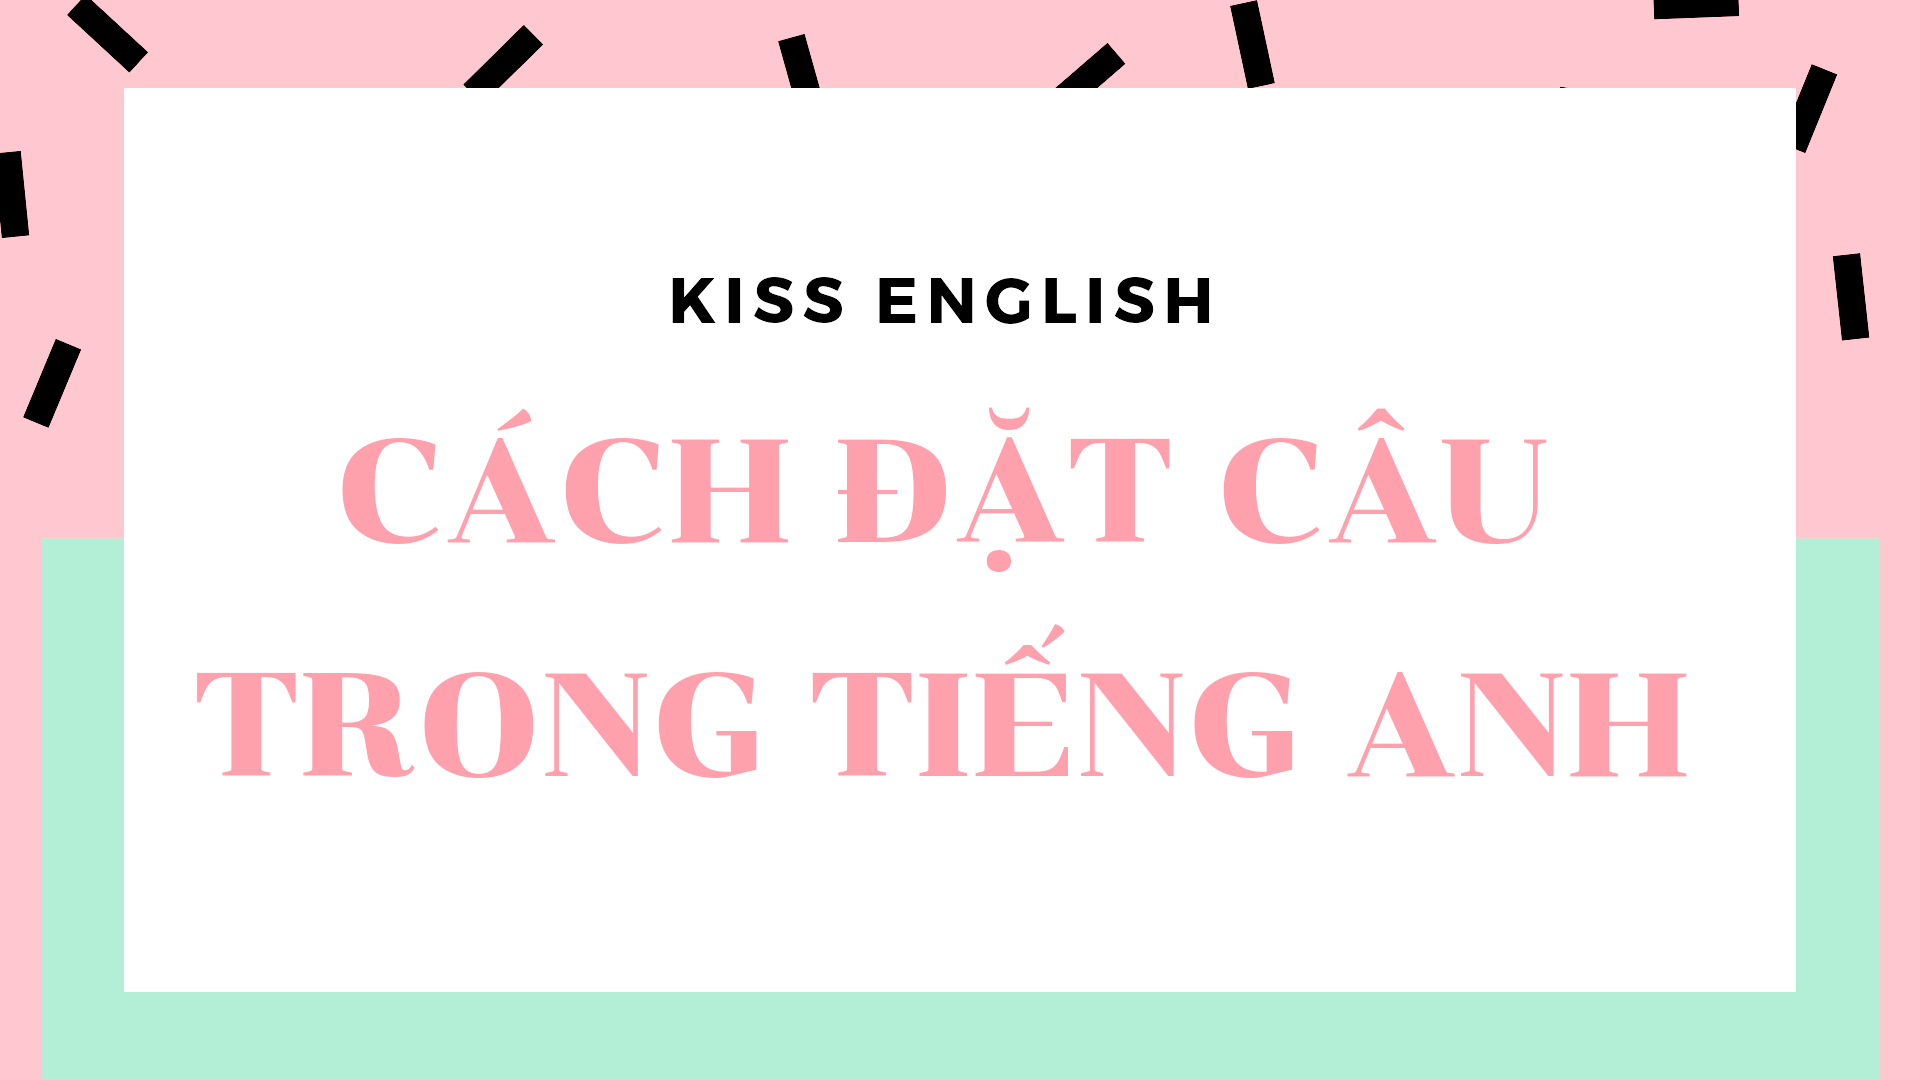 Hướng dẫn đặt câu với các từ liên kết trong tiếng Việt